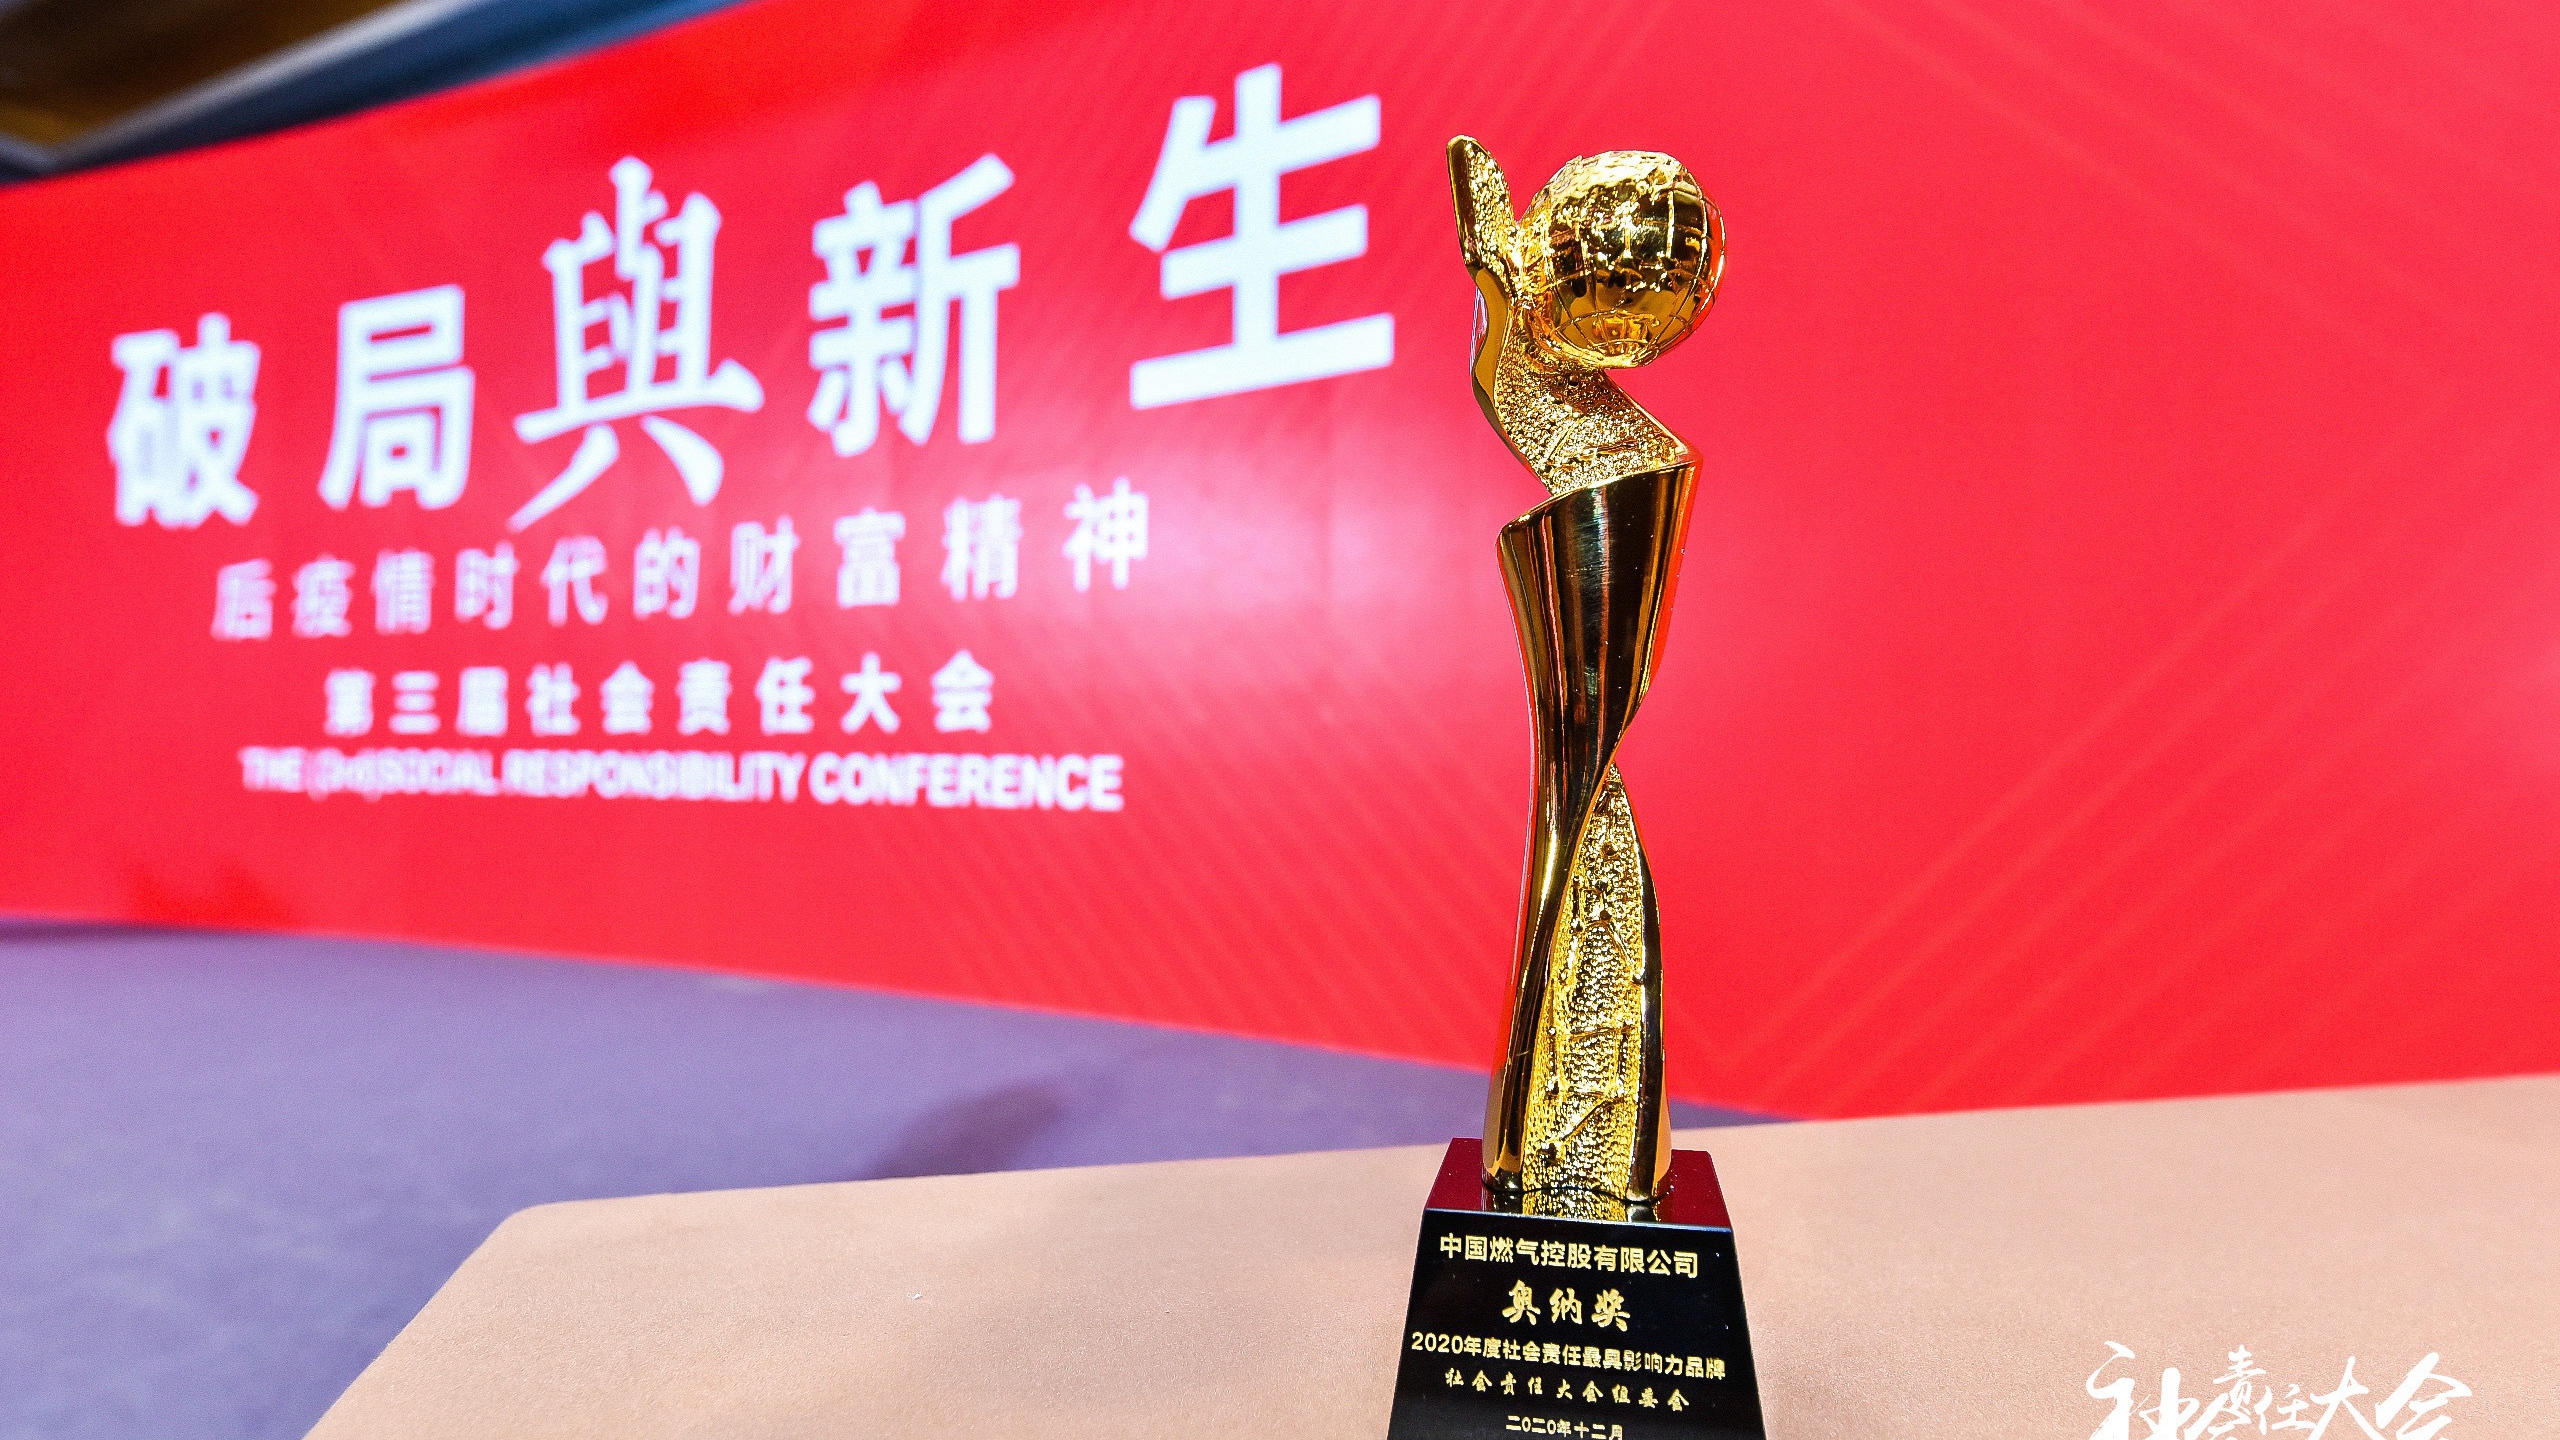 中国燃气荣获2020社会责任大会“奥纳奖-2020 年度社会责任优秀企业”奖